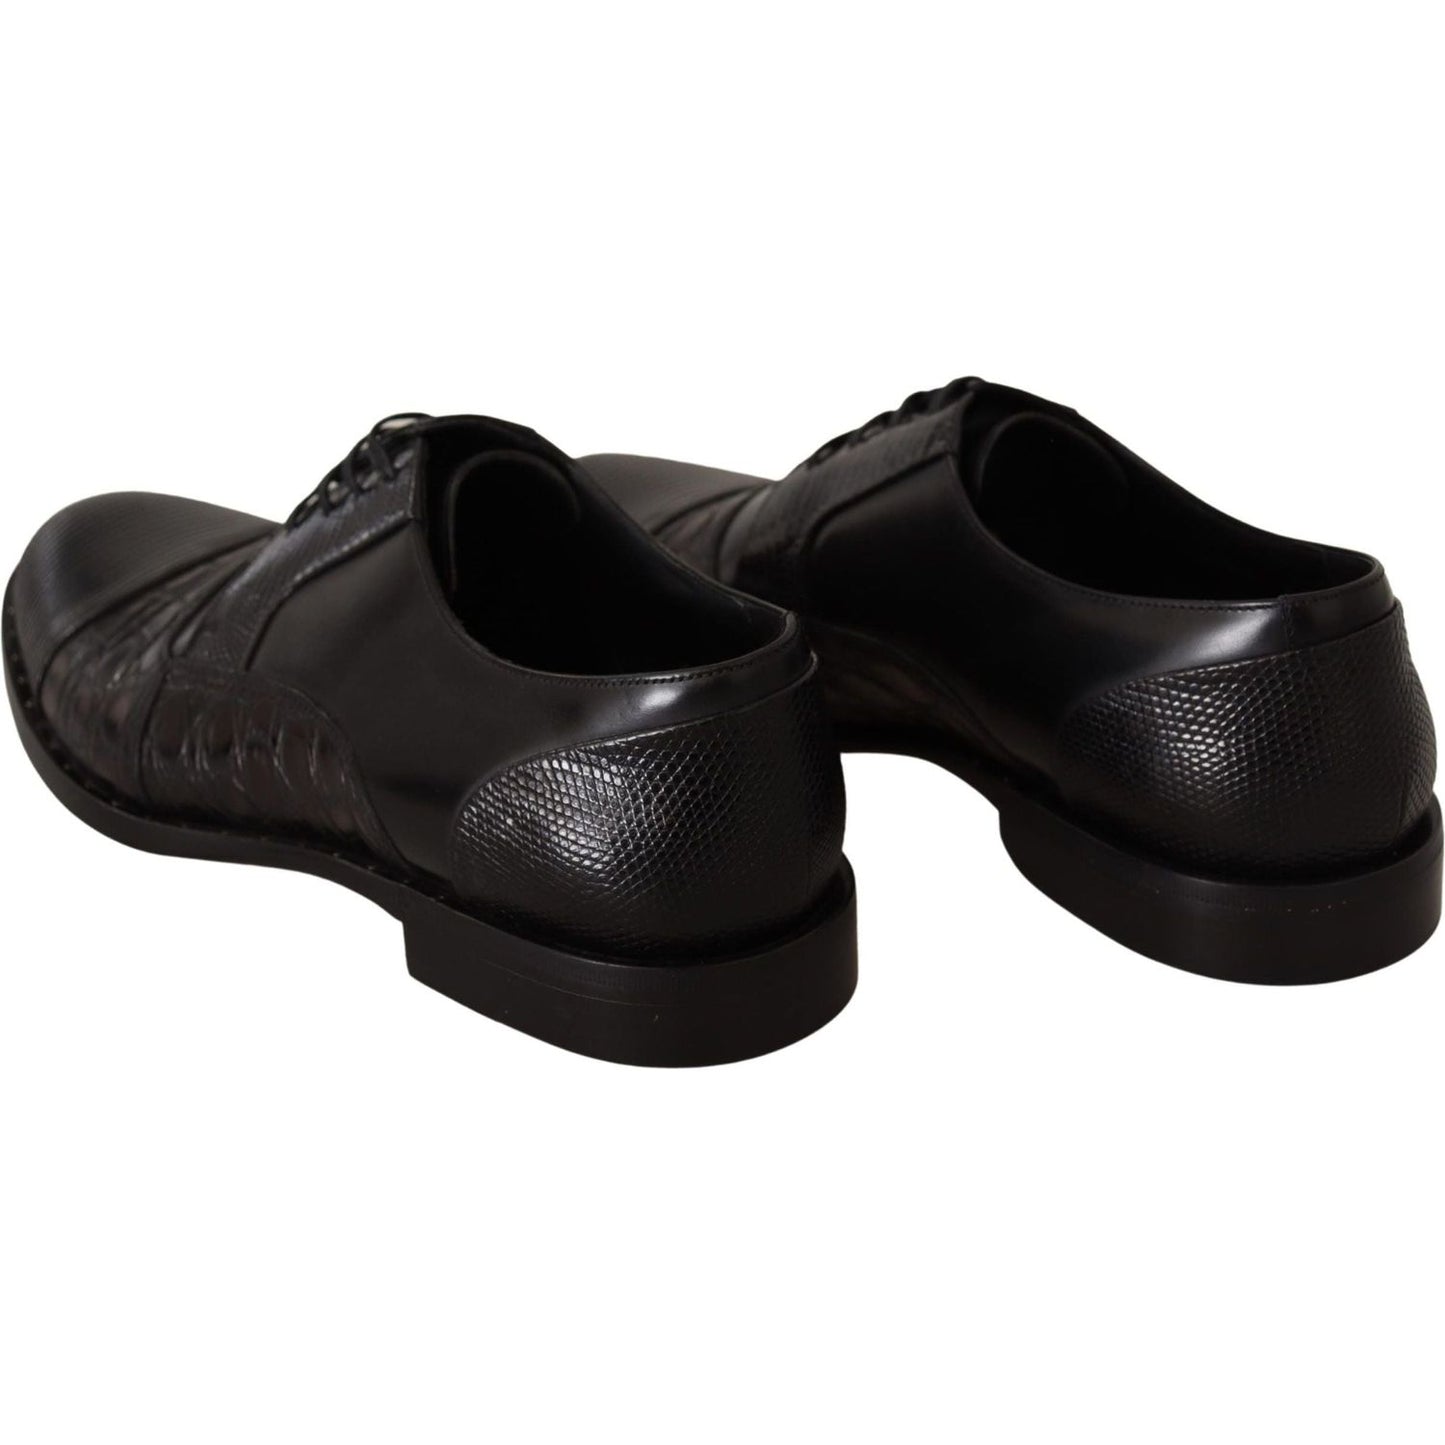 Dolce & Gabbana Elegant Black Derby Oxford Wingtips black-leather-exotic-skins-formal-shoes IMG_5311-scaled-85758948-585.jpg